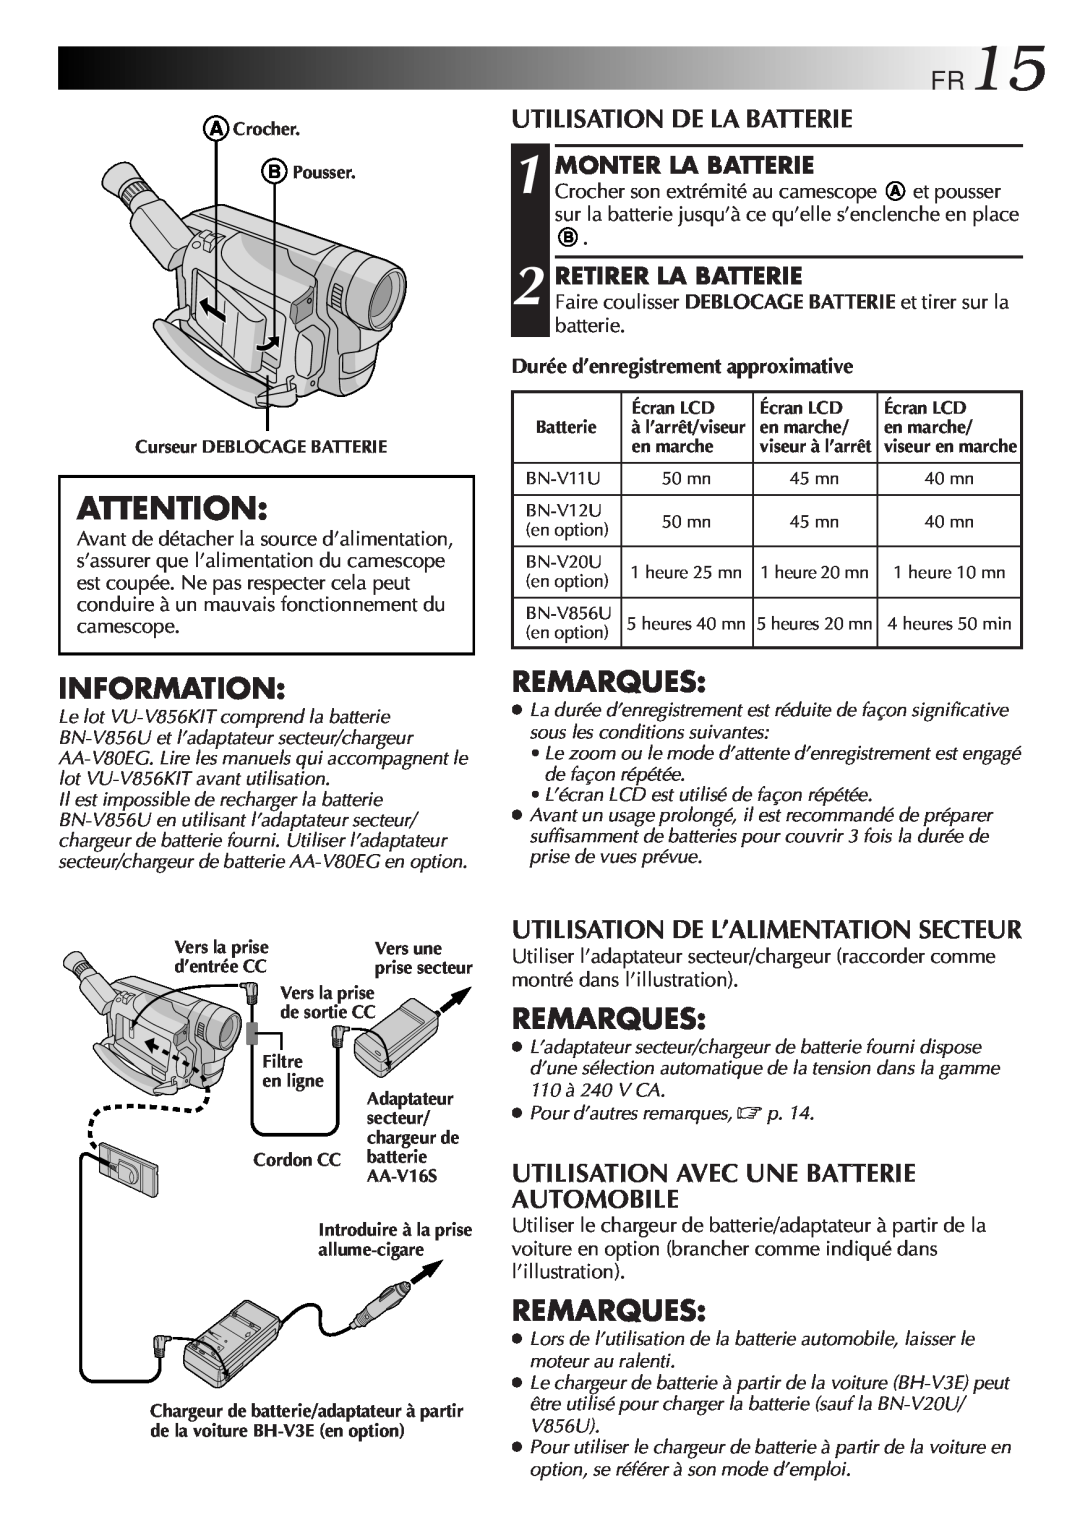 JVC GR-FXM106S manual Information, FR15, Utilisation De La Batterie, Utilisation De L’Alimentation Secteur, Remarques 